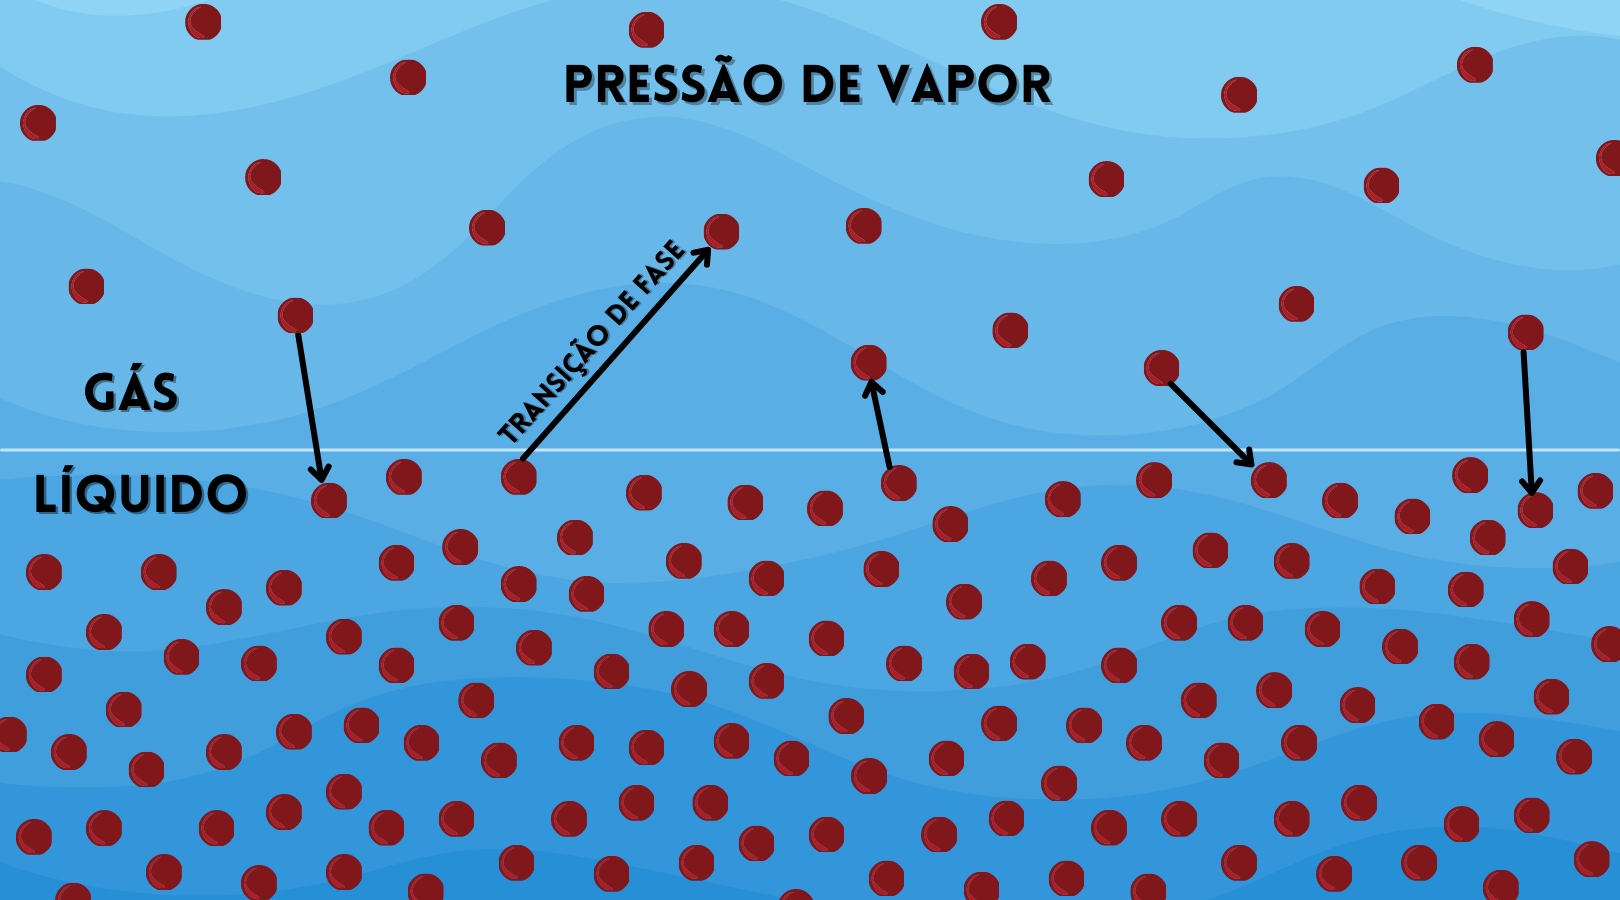 agua liquido gas - (Português do Brasil) Como a roupa seca no varal se a água ferve a 100 °C? (V.4, N.4, P.1, 2021)